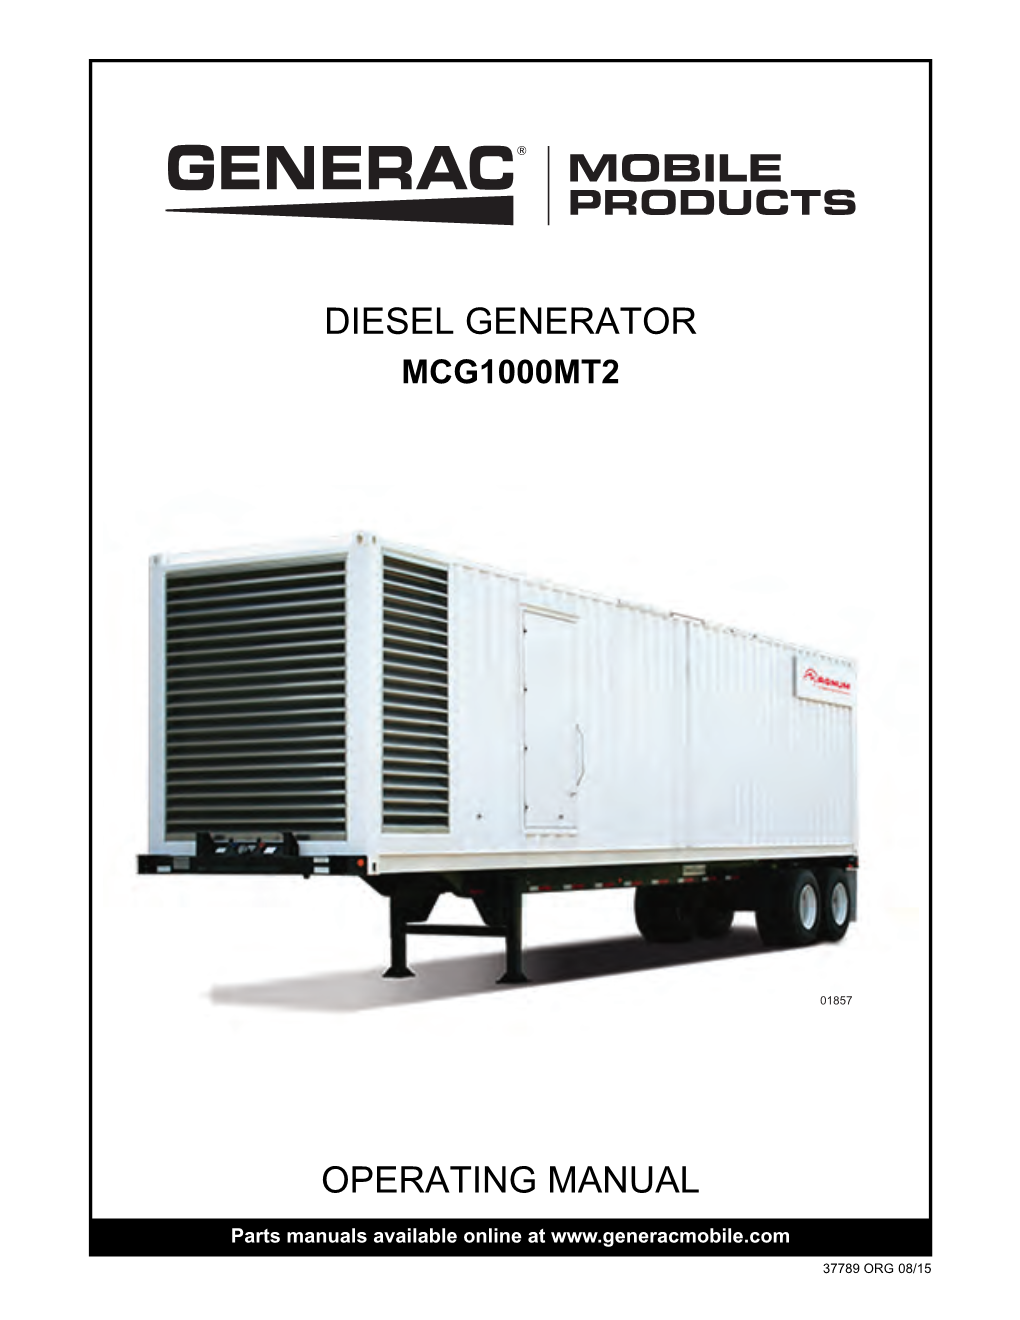 Operating Manual Diesel Generator